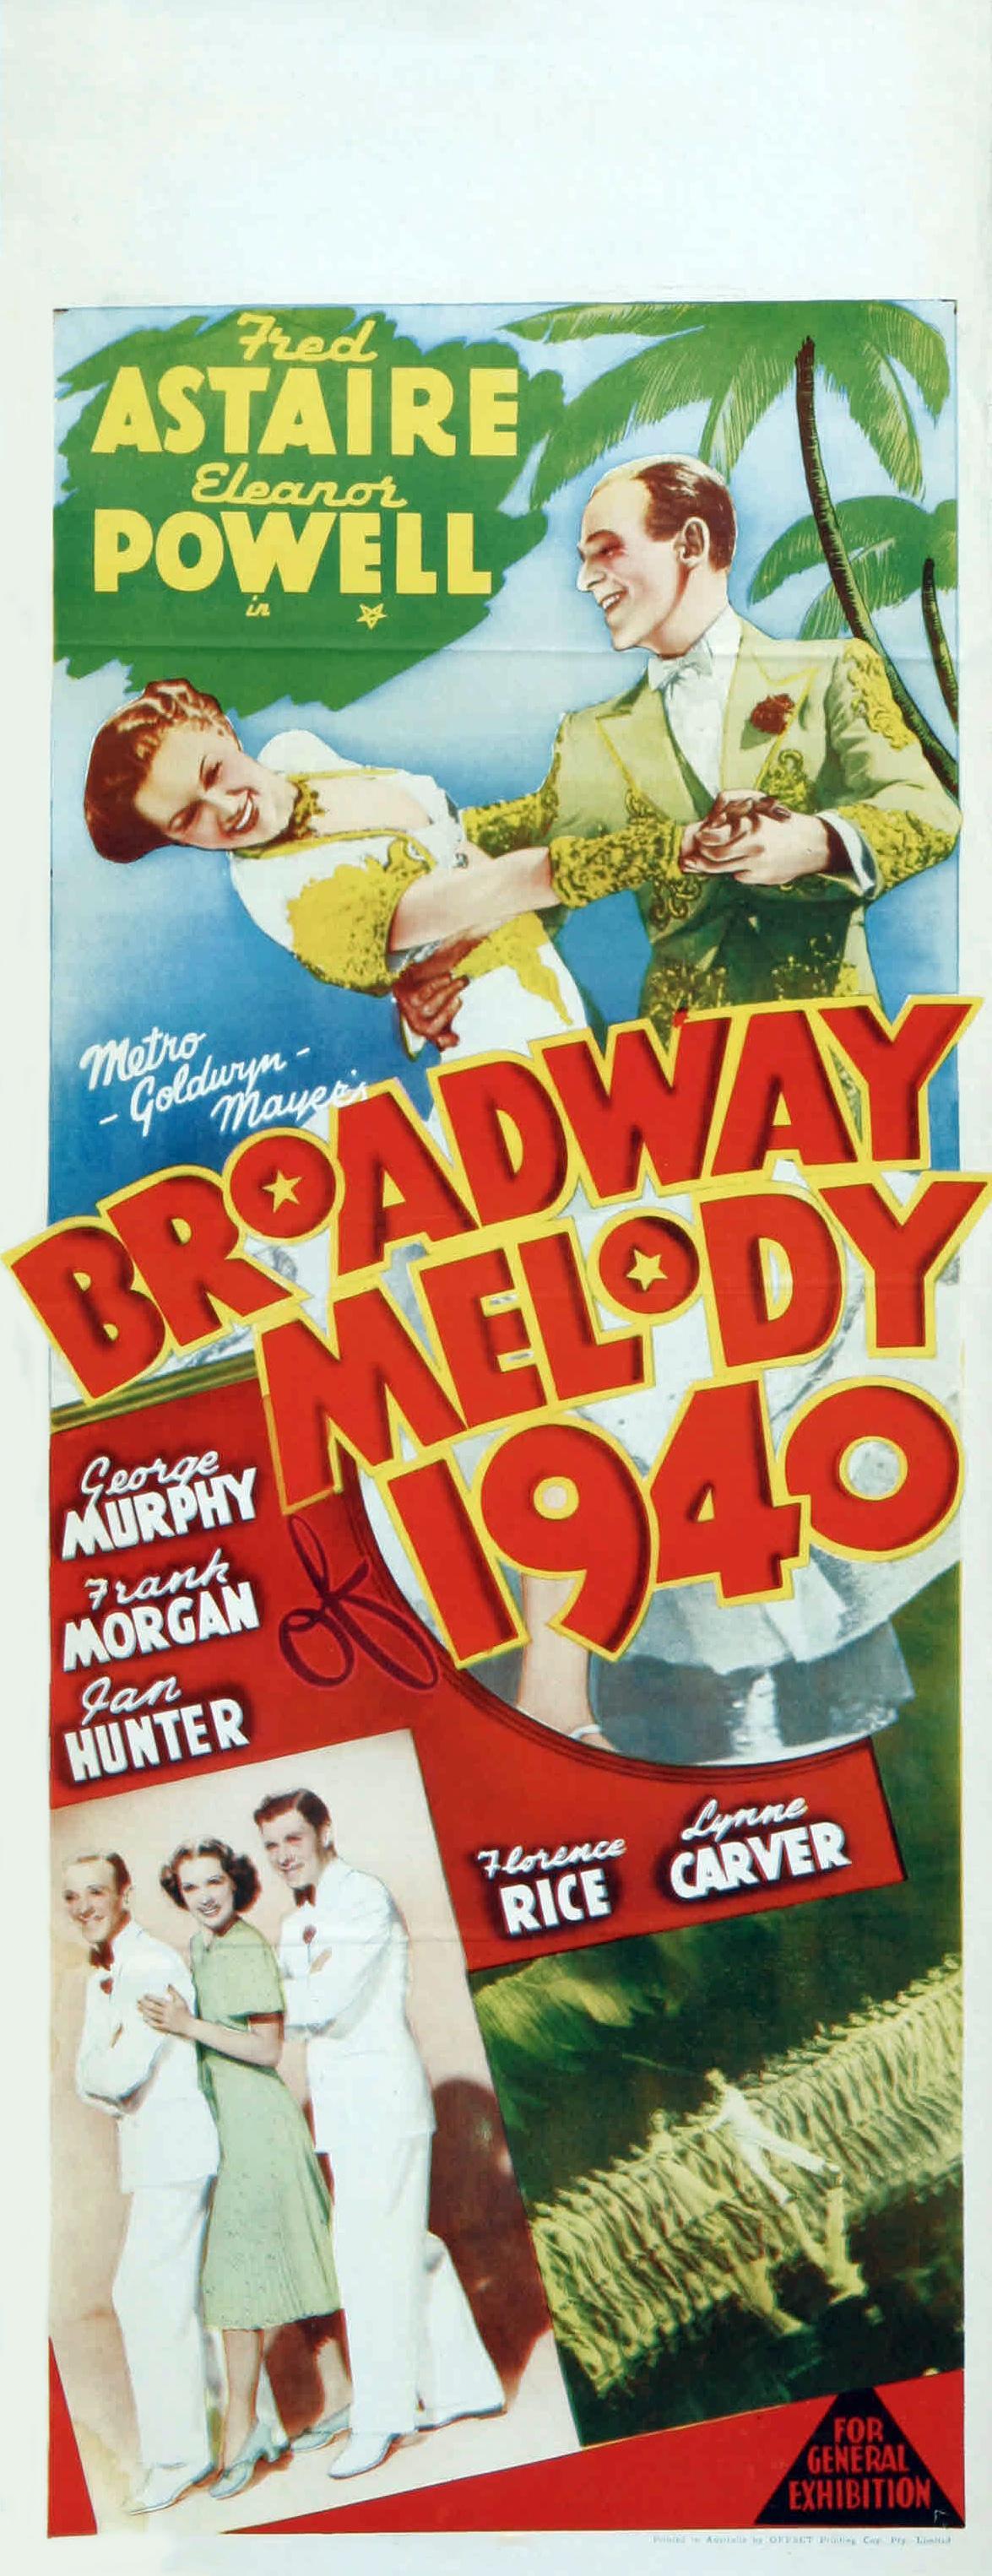 Постер фильма Бродвейская мелодия 1940-го года | Broadway Melody of 1940